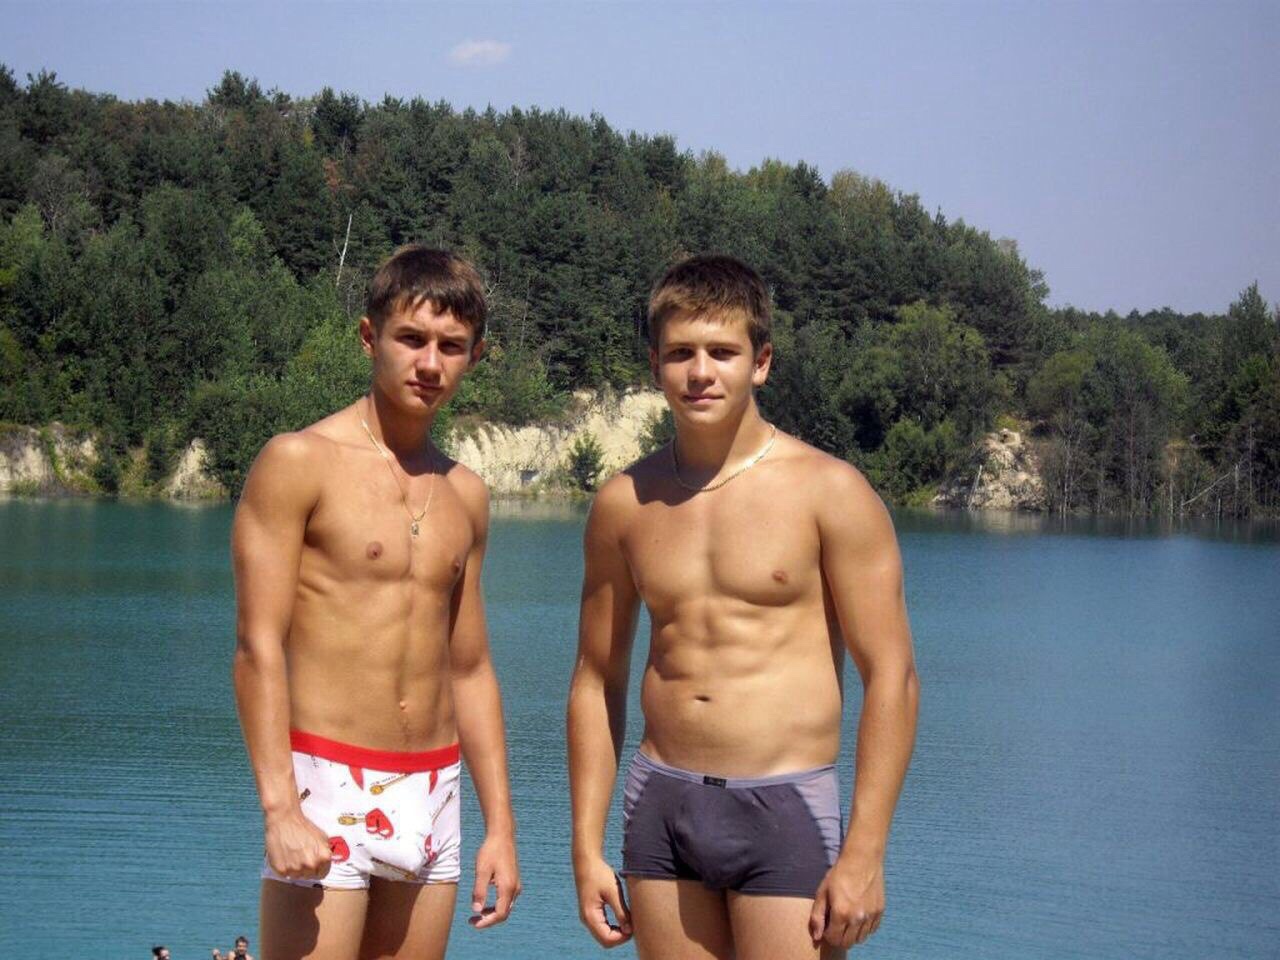 У друга стояк. Русские парни на речке. Русские мужчины в плавках.